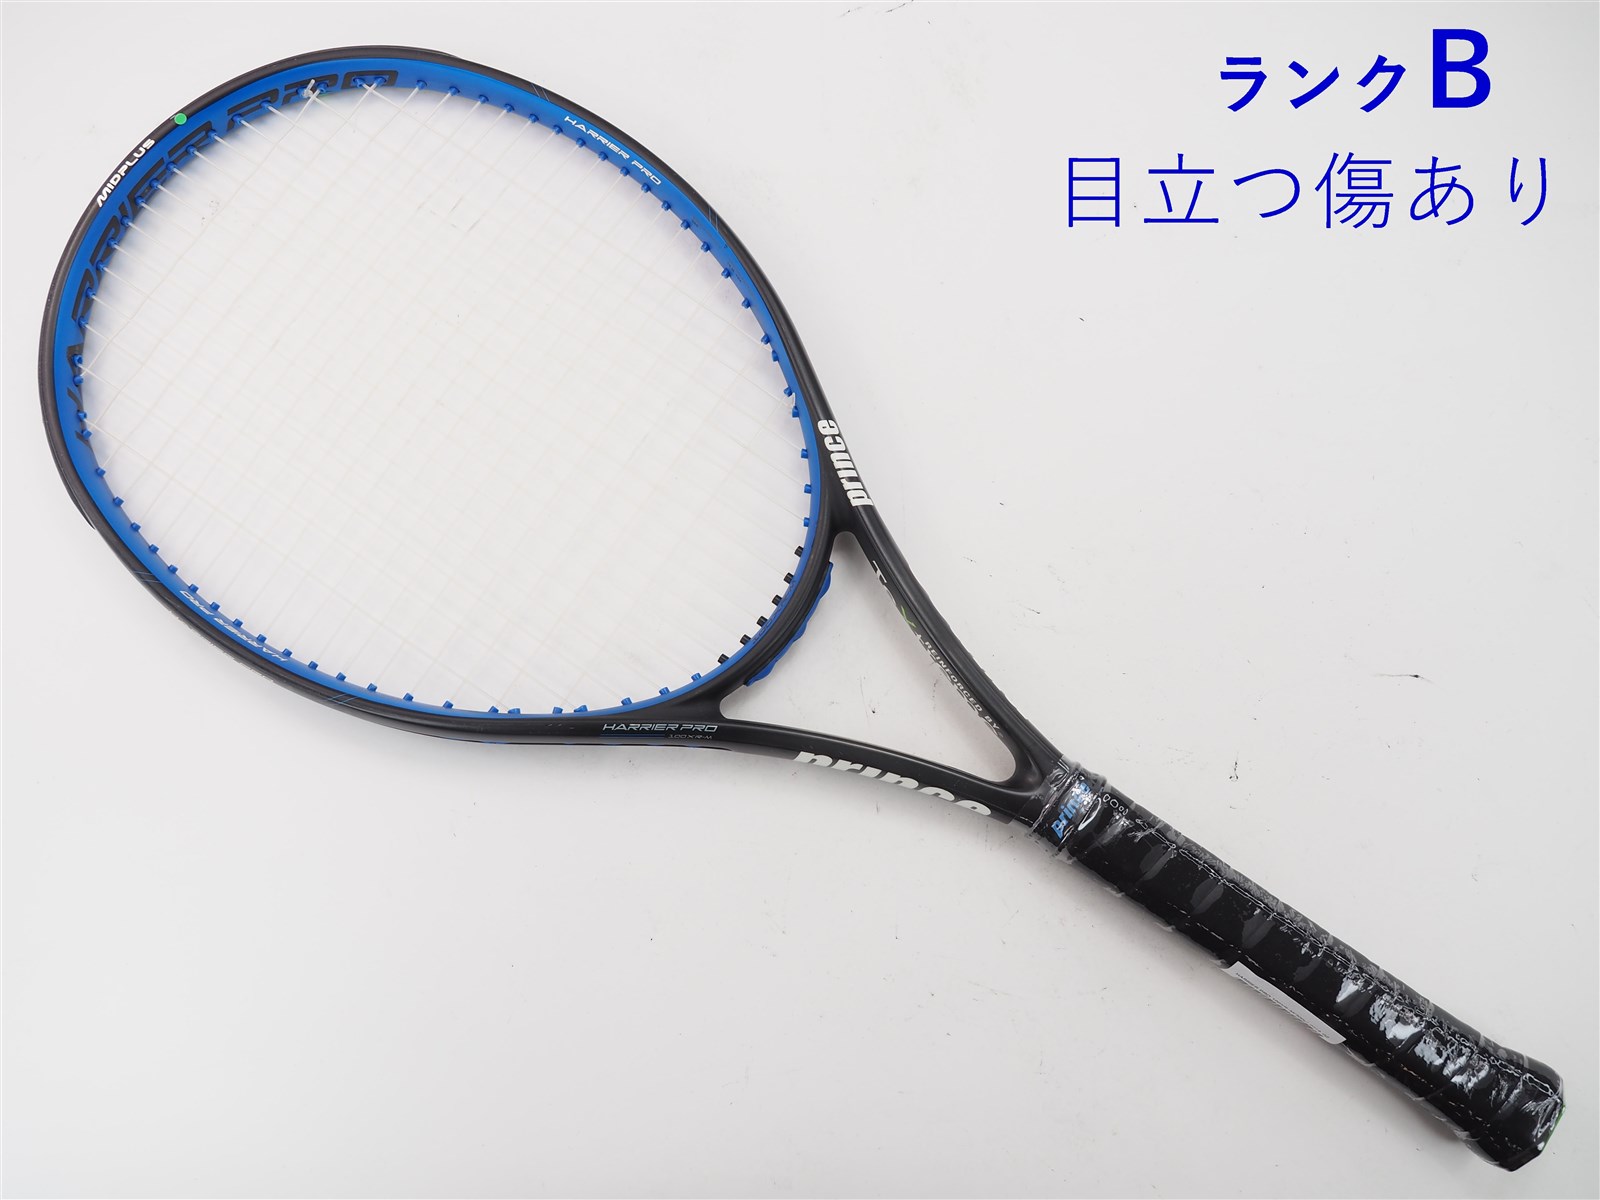 テニスラケット プリンス ハリアー プロ 100XR-M(300g) 2016年モデル